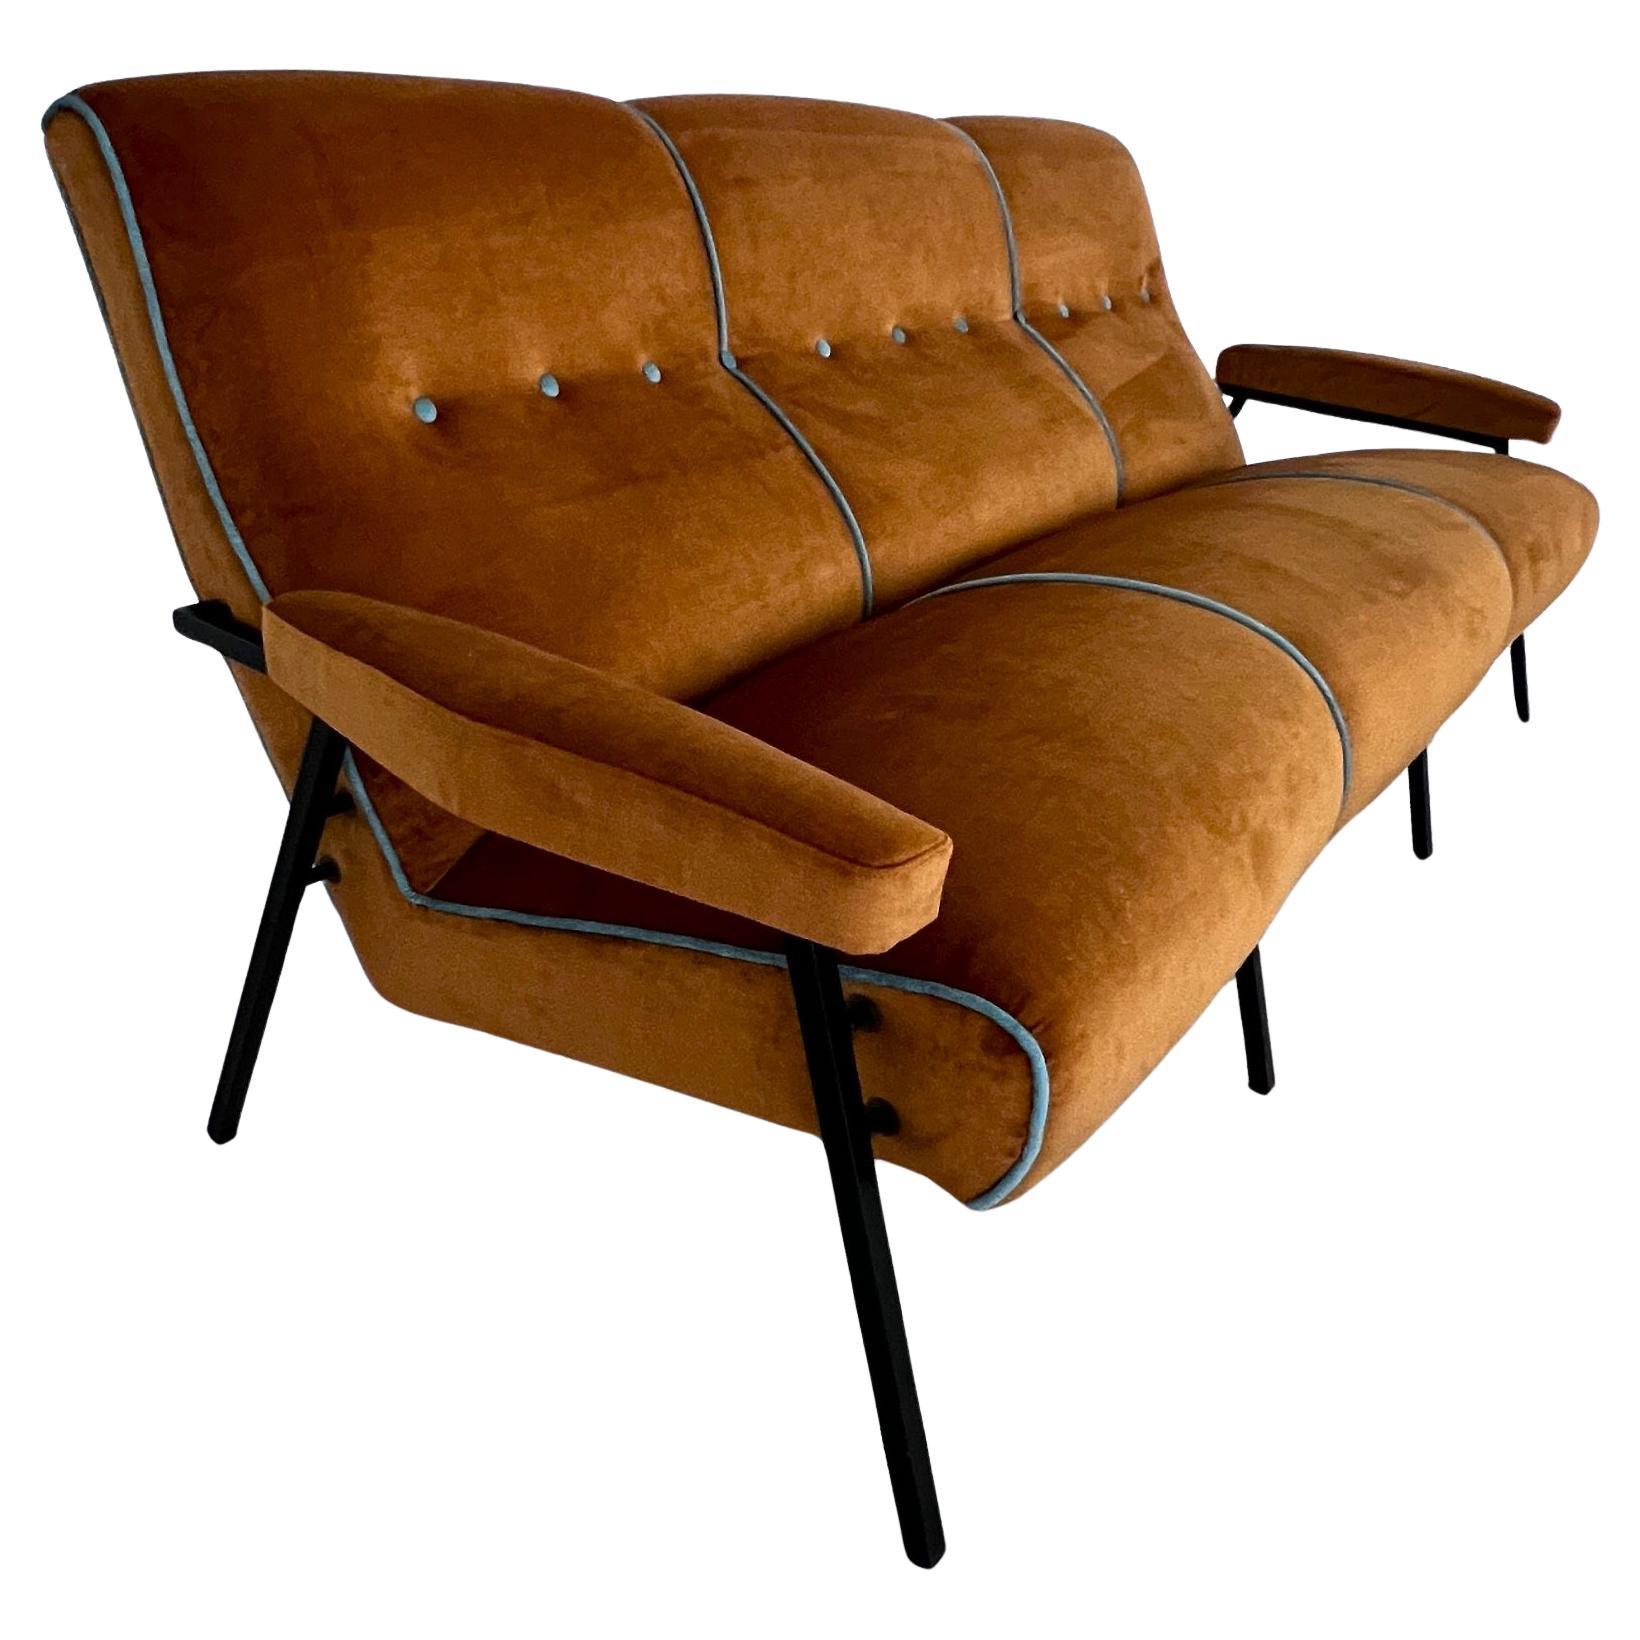 Elegantes italienisches Sofa, hergestellt in den 60er Jahren mit den typischen quadratischen Metallbeinen.
Das Sofa wurde komplett überarbeitet und mit hochwertigem MATERIAL für die Innenseite und superweichem, pflegeleichtem Samt für die Außenseite